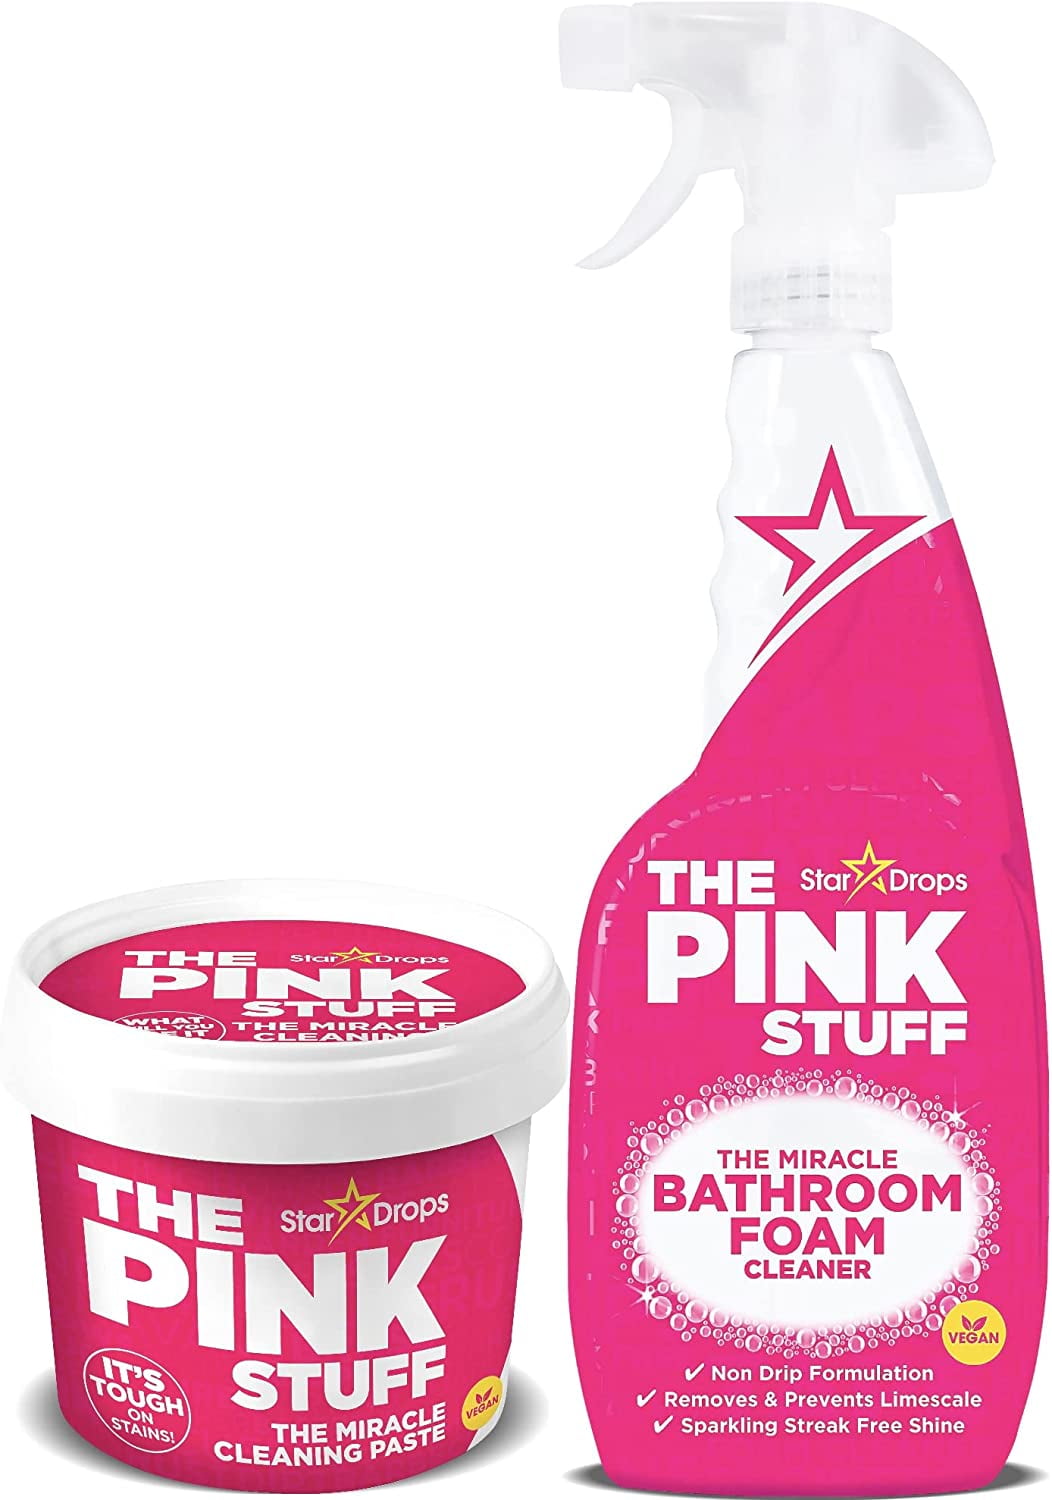 The Pink Stuff, Home & Bathroom Foam Cleaner, 25.36 fl. oz